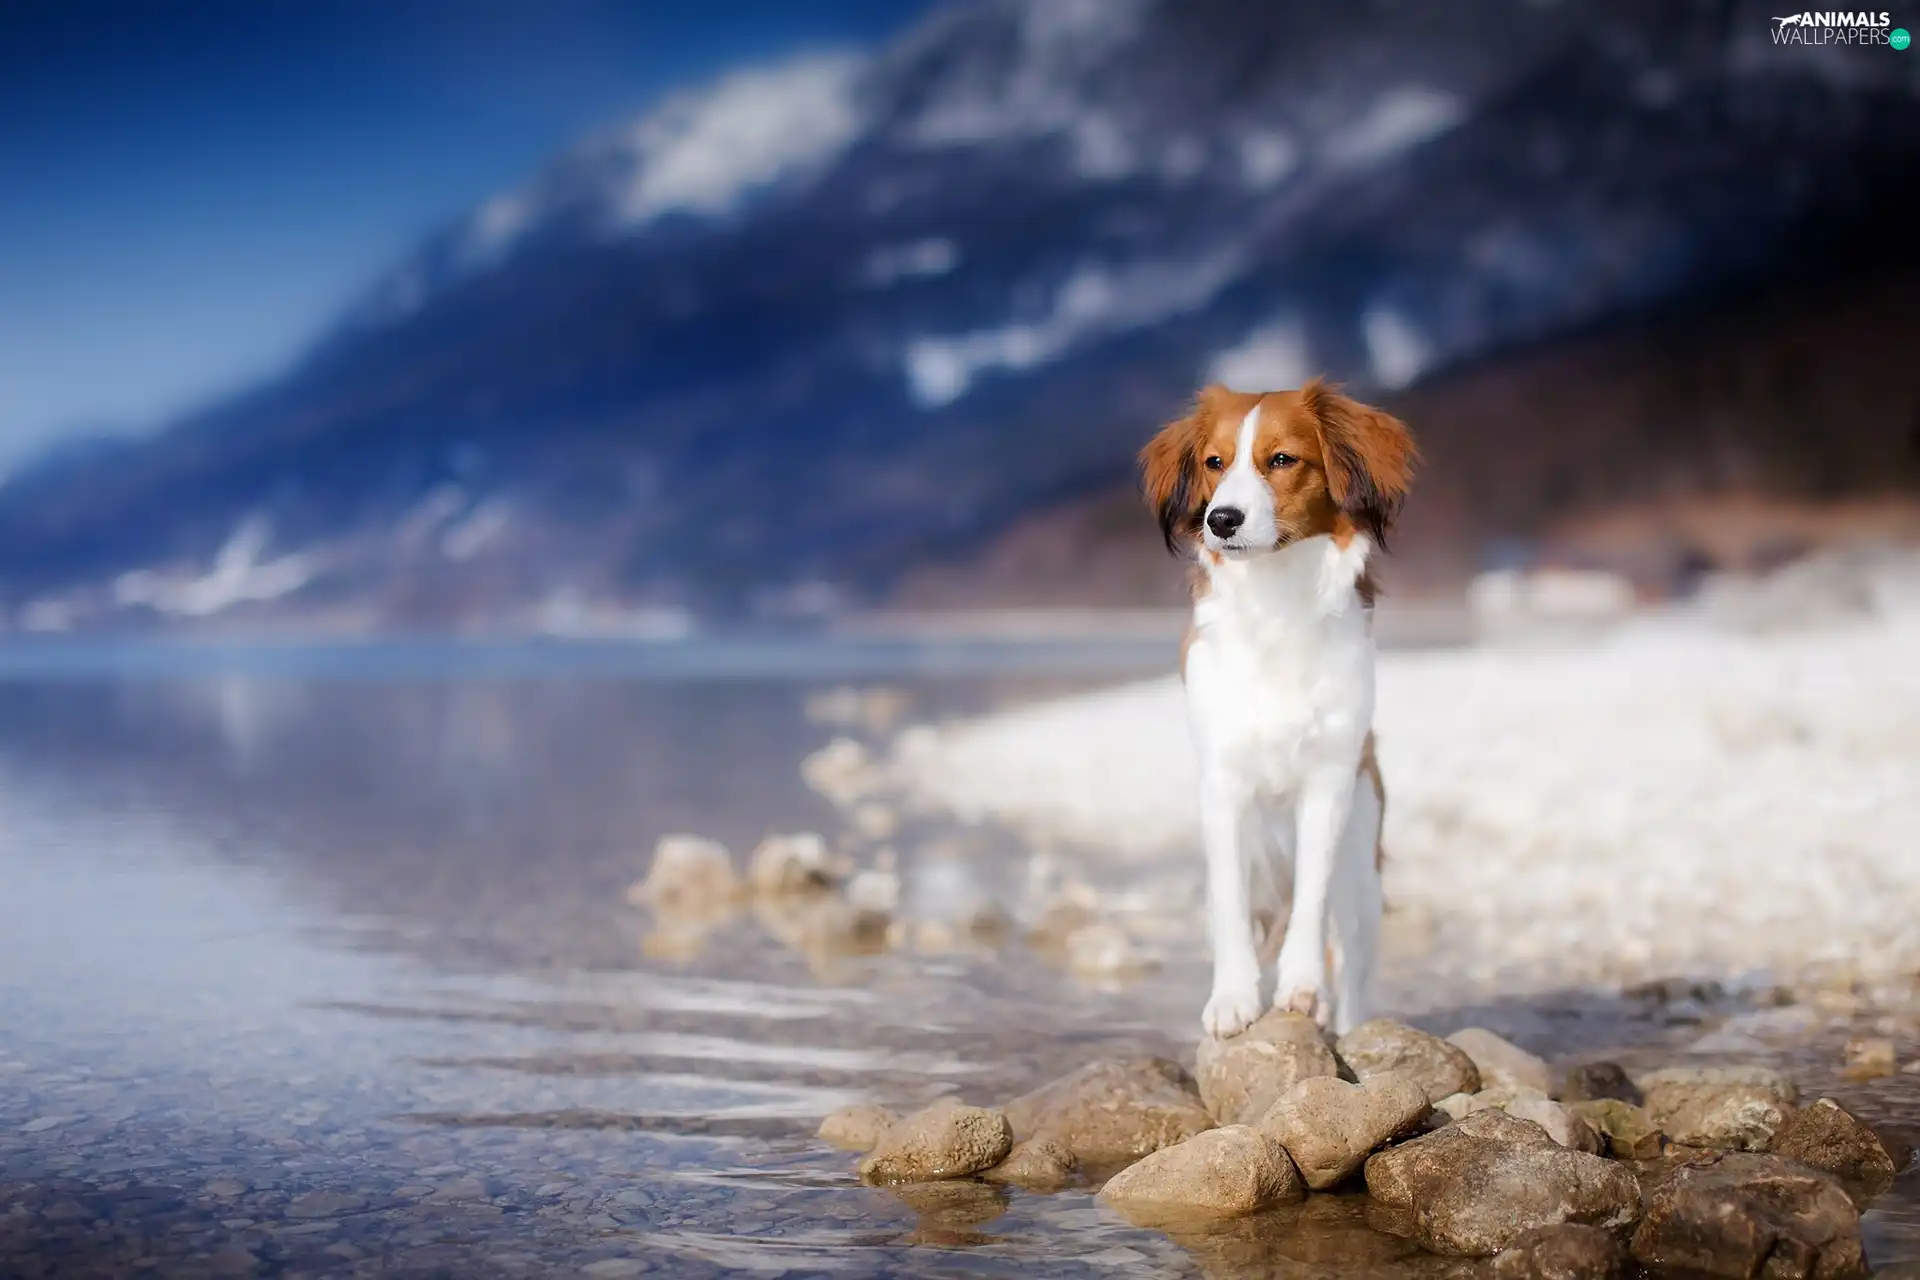 lake, Stones, Alpine Dutch, Mountains, dog